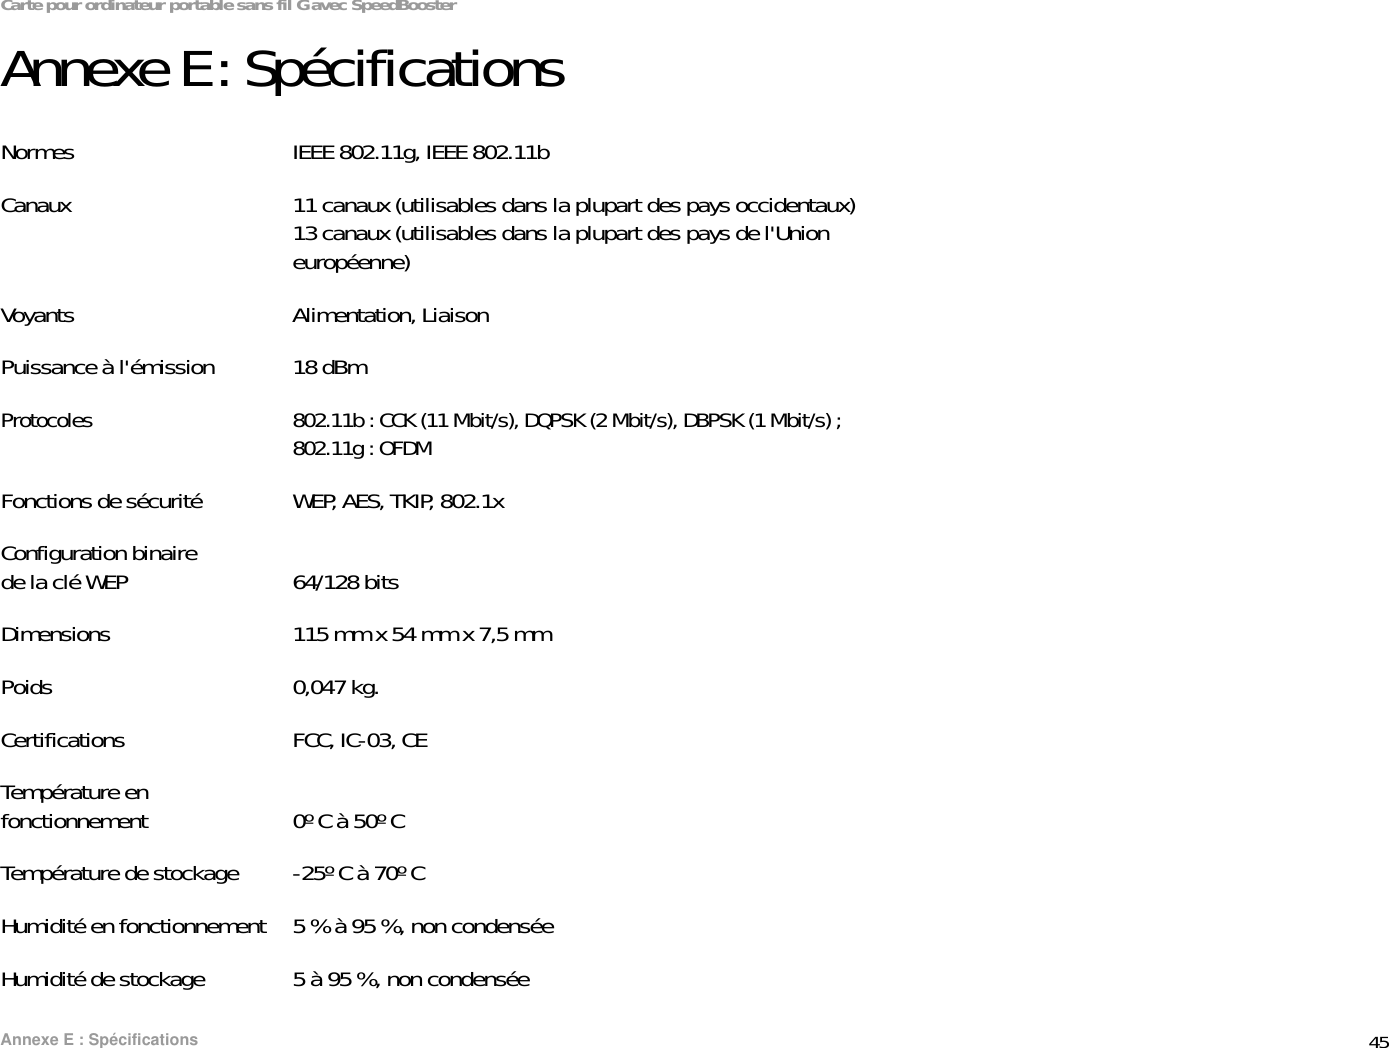 45Annexe E : SpécificationsCarte pour ordinateur portable sans fil G avec SpeedBoosterAnnexe E : SpécificationsNormes IEEE 802.11g, IEEE 802.11bCanaux 11 canaux (utilisables dans la plupart des pays occidentaux)13 canaux (utilisables dans la plupart des pays de l&apos;Union européenne)Voyants Alimentation, LiaisonPuissance à l&apos;émission 18 dBm Protocoles 802.11b : CCK (11 Mbit/s), DQPSK (2 Mbit/s), DBPSK (1 Mbit/s) ; 802.11g : OFDMFonctions de sécurité WEP, AES, TKIP, 802.1xConfiguration binaire de la clé WEP 64/128 bitsDimensions 115 mm x 54 mm x 7,5 mmPoids 0,047 kg.Certifications FCC, IC-03, CETempérature en fonctionnement 0º C à 50º CTempérature de stockage -25º C à 70º CHumidité en fonctionnement 5 % à 95 %, non condenséeHumidité de stockage 5 à 95 %, non condensée